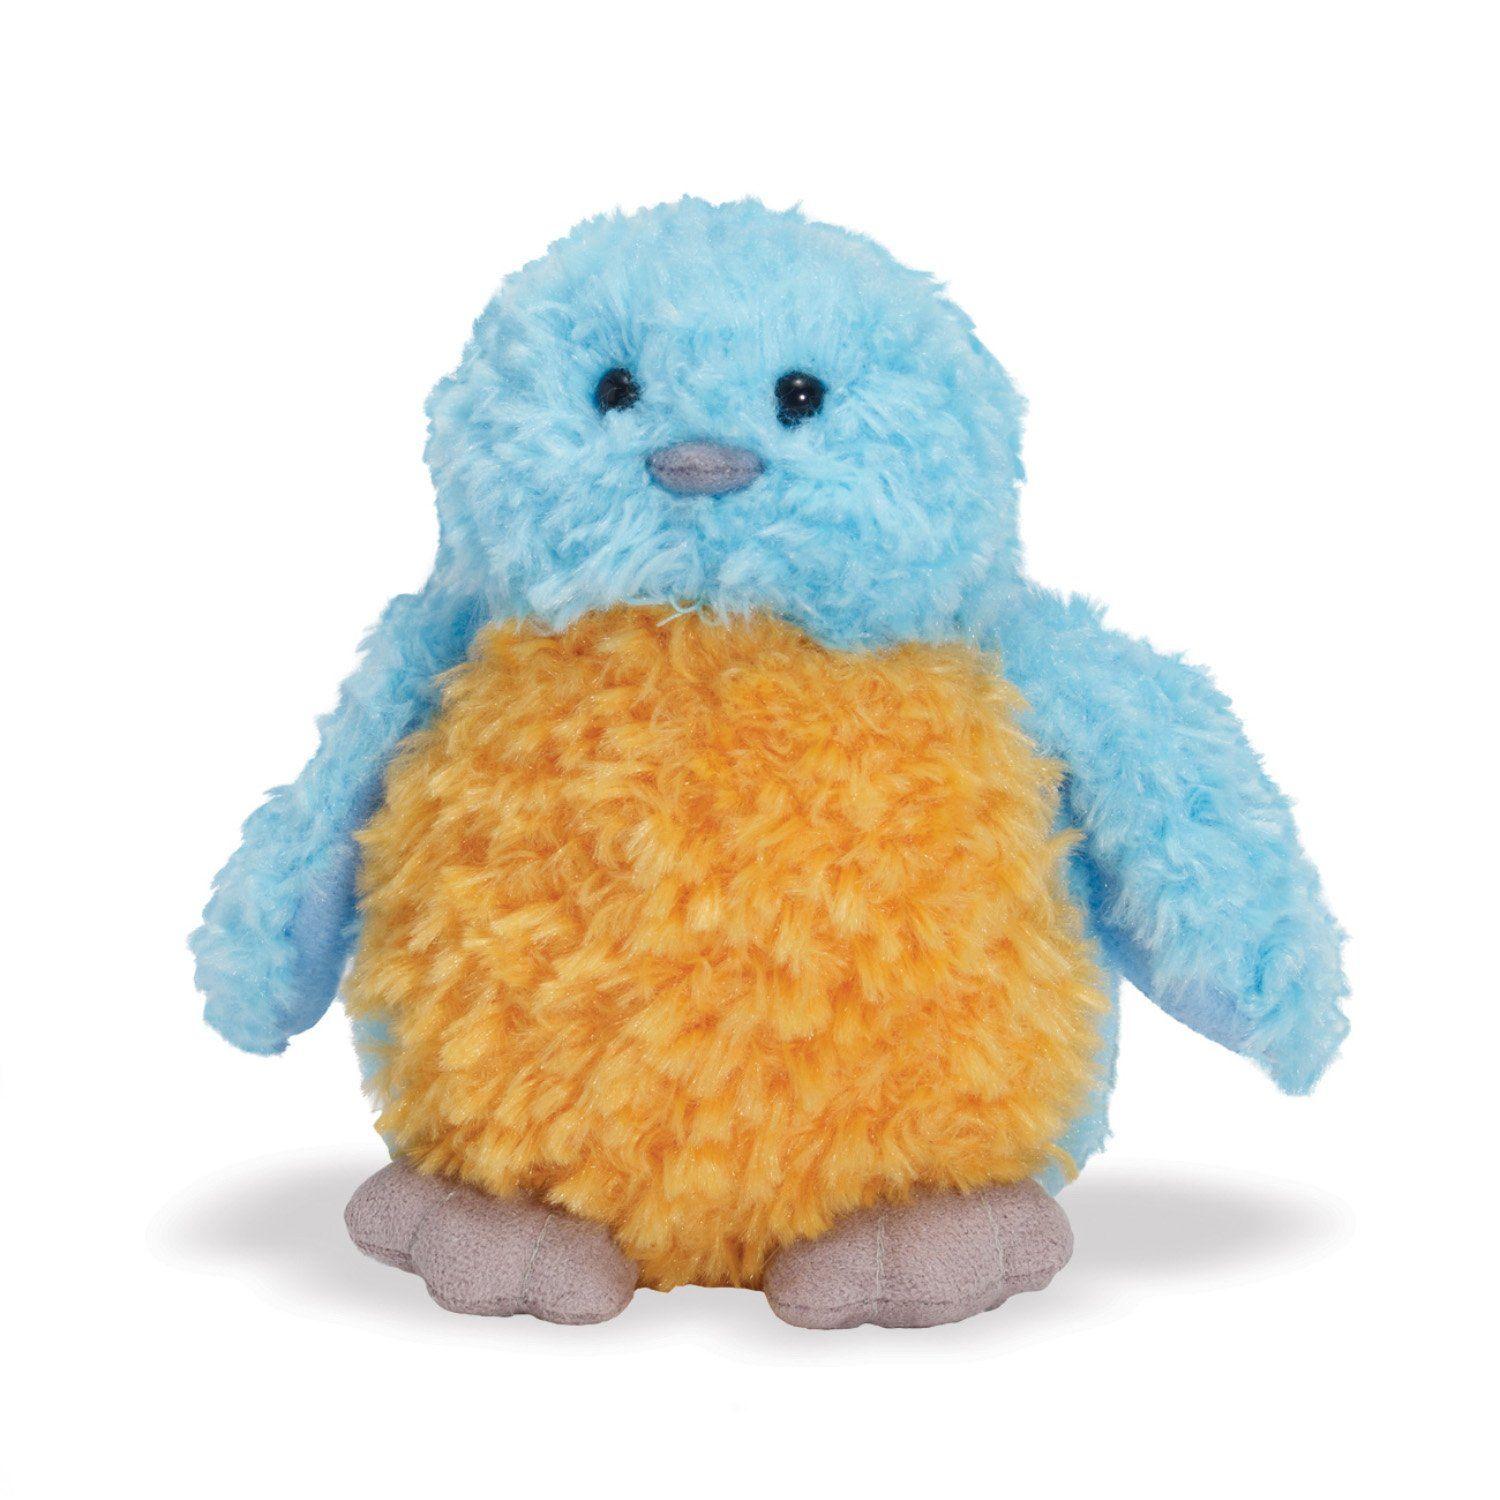 Orange and Blue Bird Logo - Little Ones Bitsy Bluebird Soft Toy: Amazon.co.uk: Toys & Games